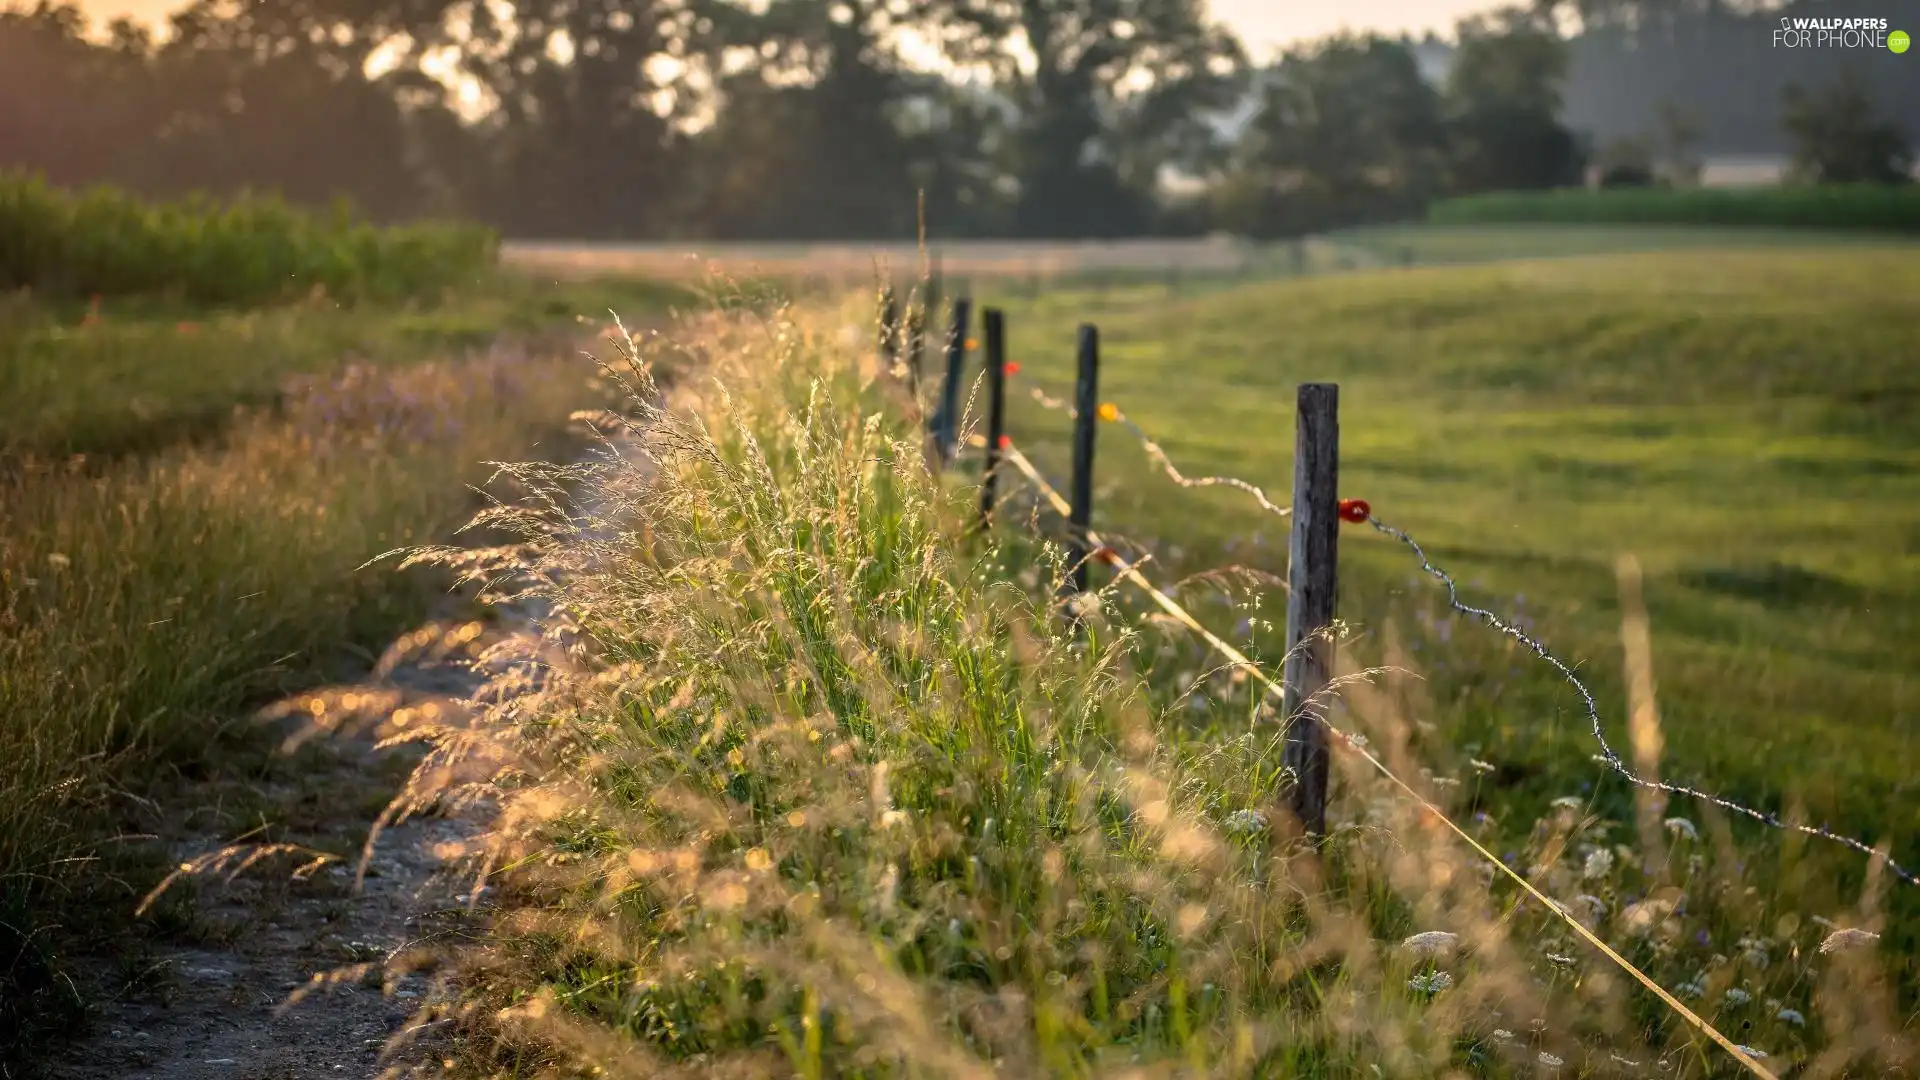 field, Path, Fance, Fance, Way, grass, fence